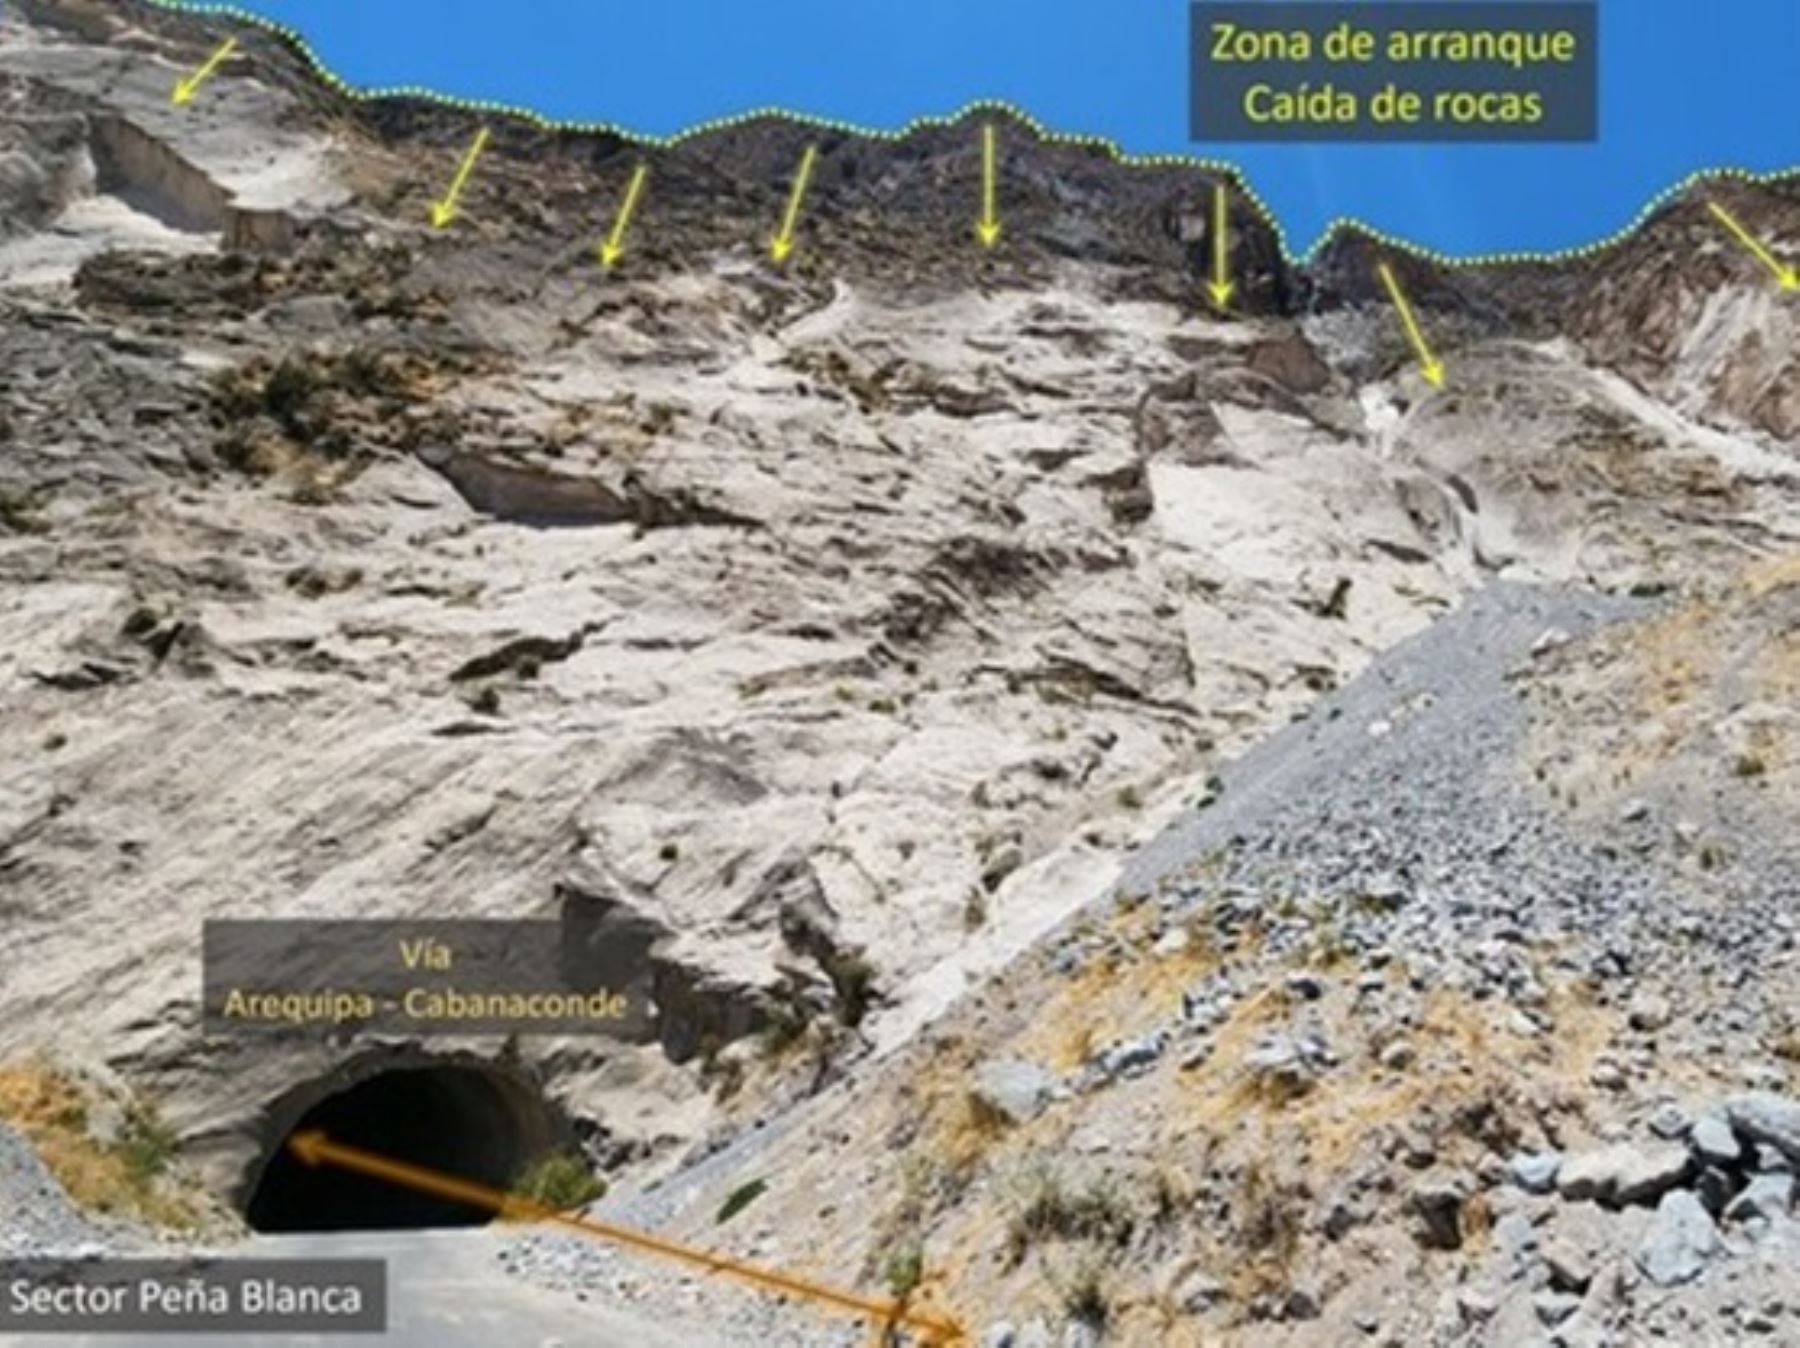 Ingemmet advierte que la carretera Arequipa - Cabanaconde está en riesgo por derrumbes y caída de rocas.